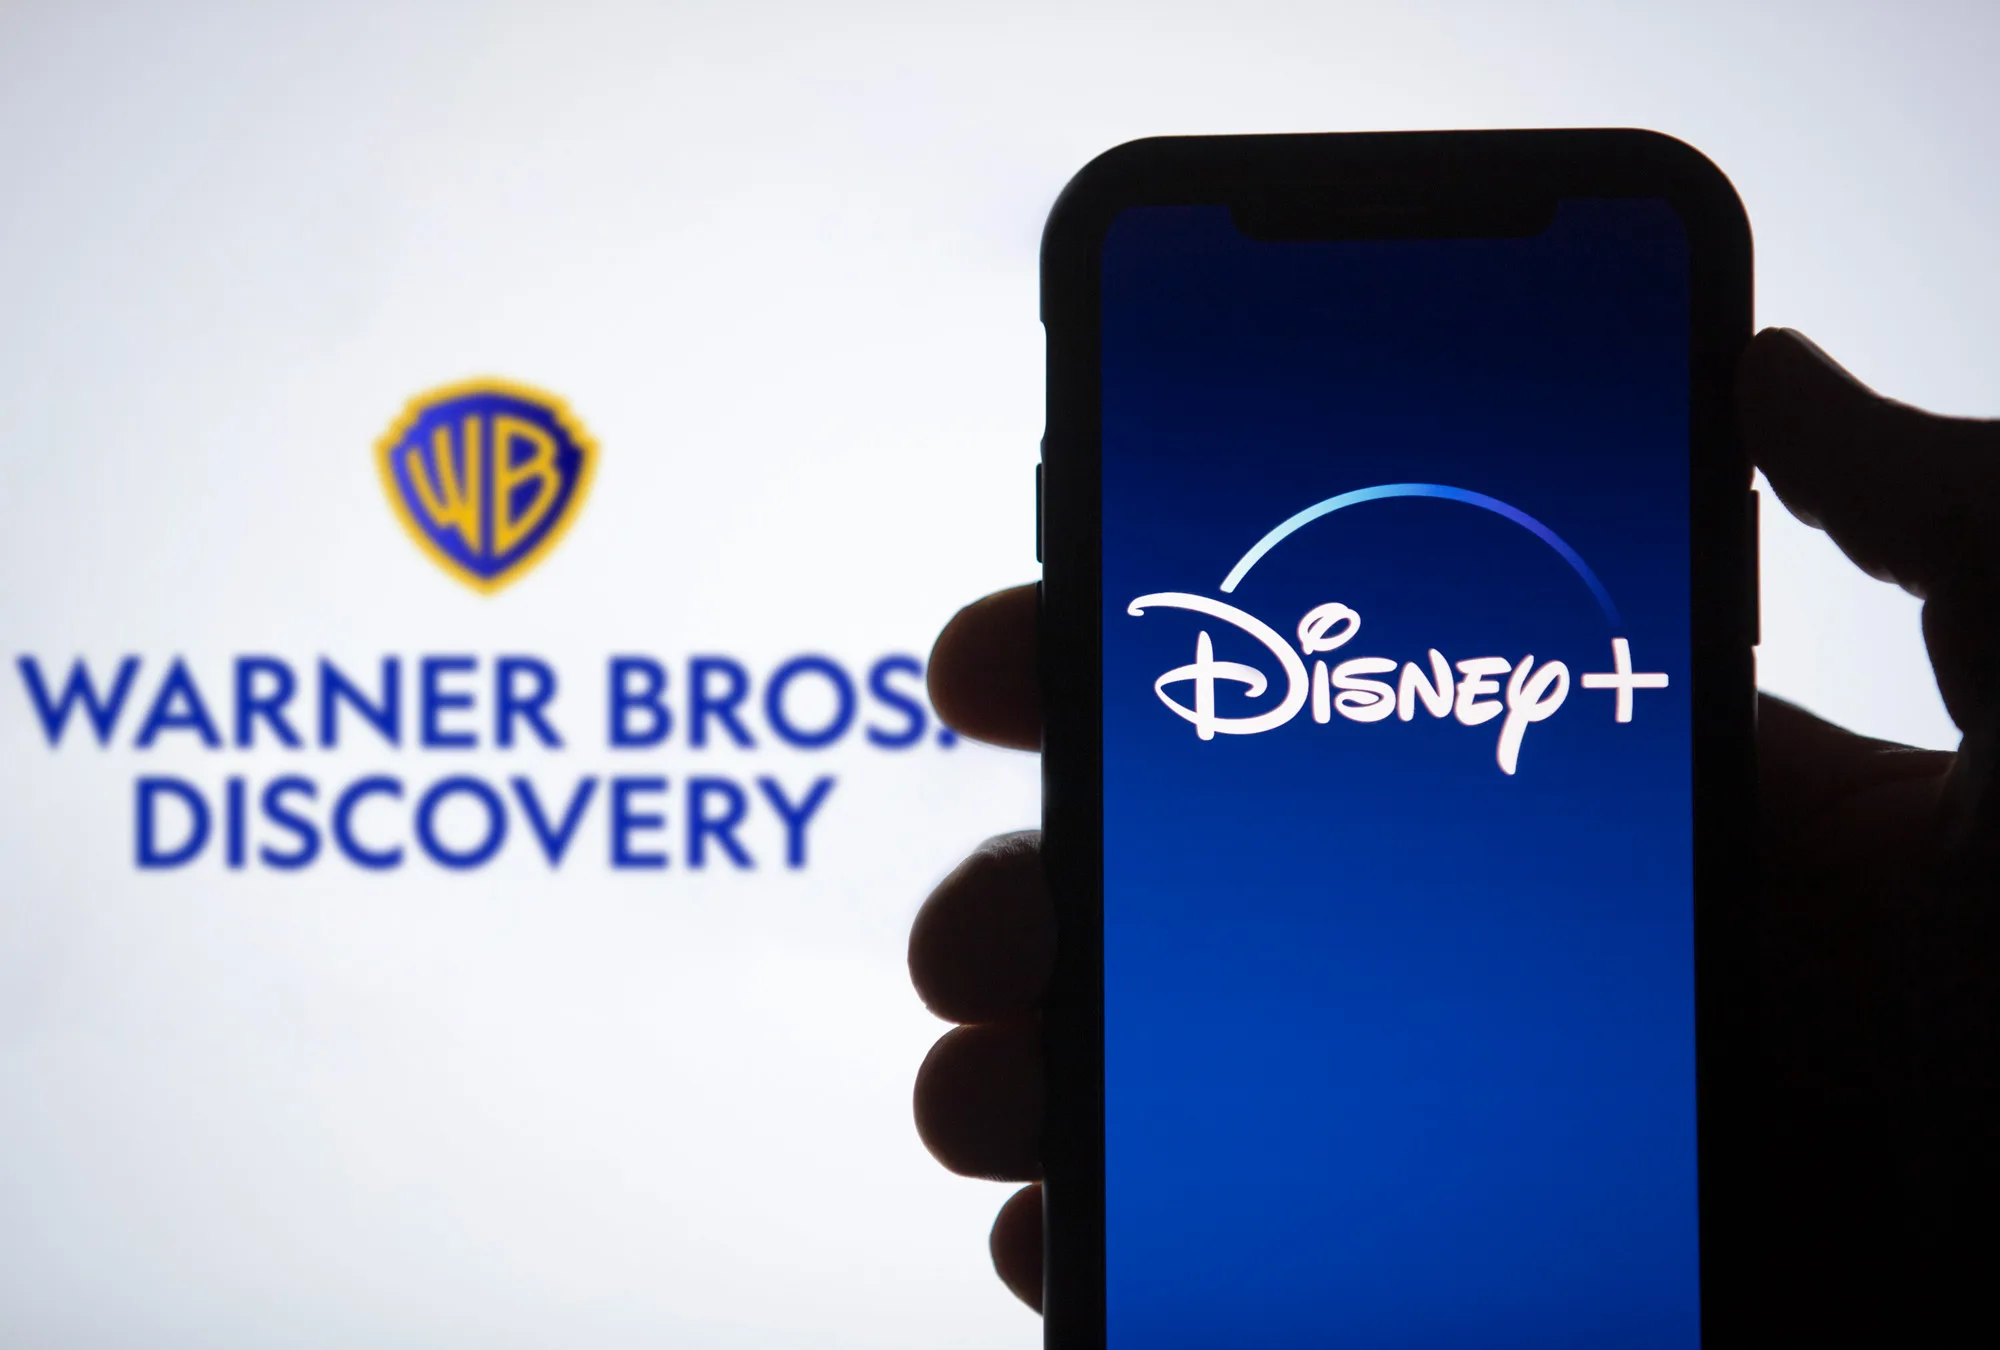 Disney y Warner Bros. Discovery ofrecerán ‘streaming’ conjunto